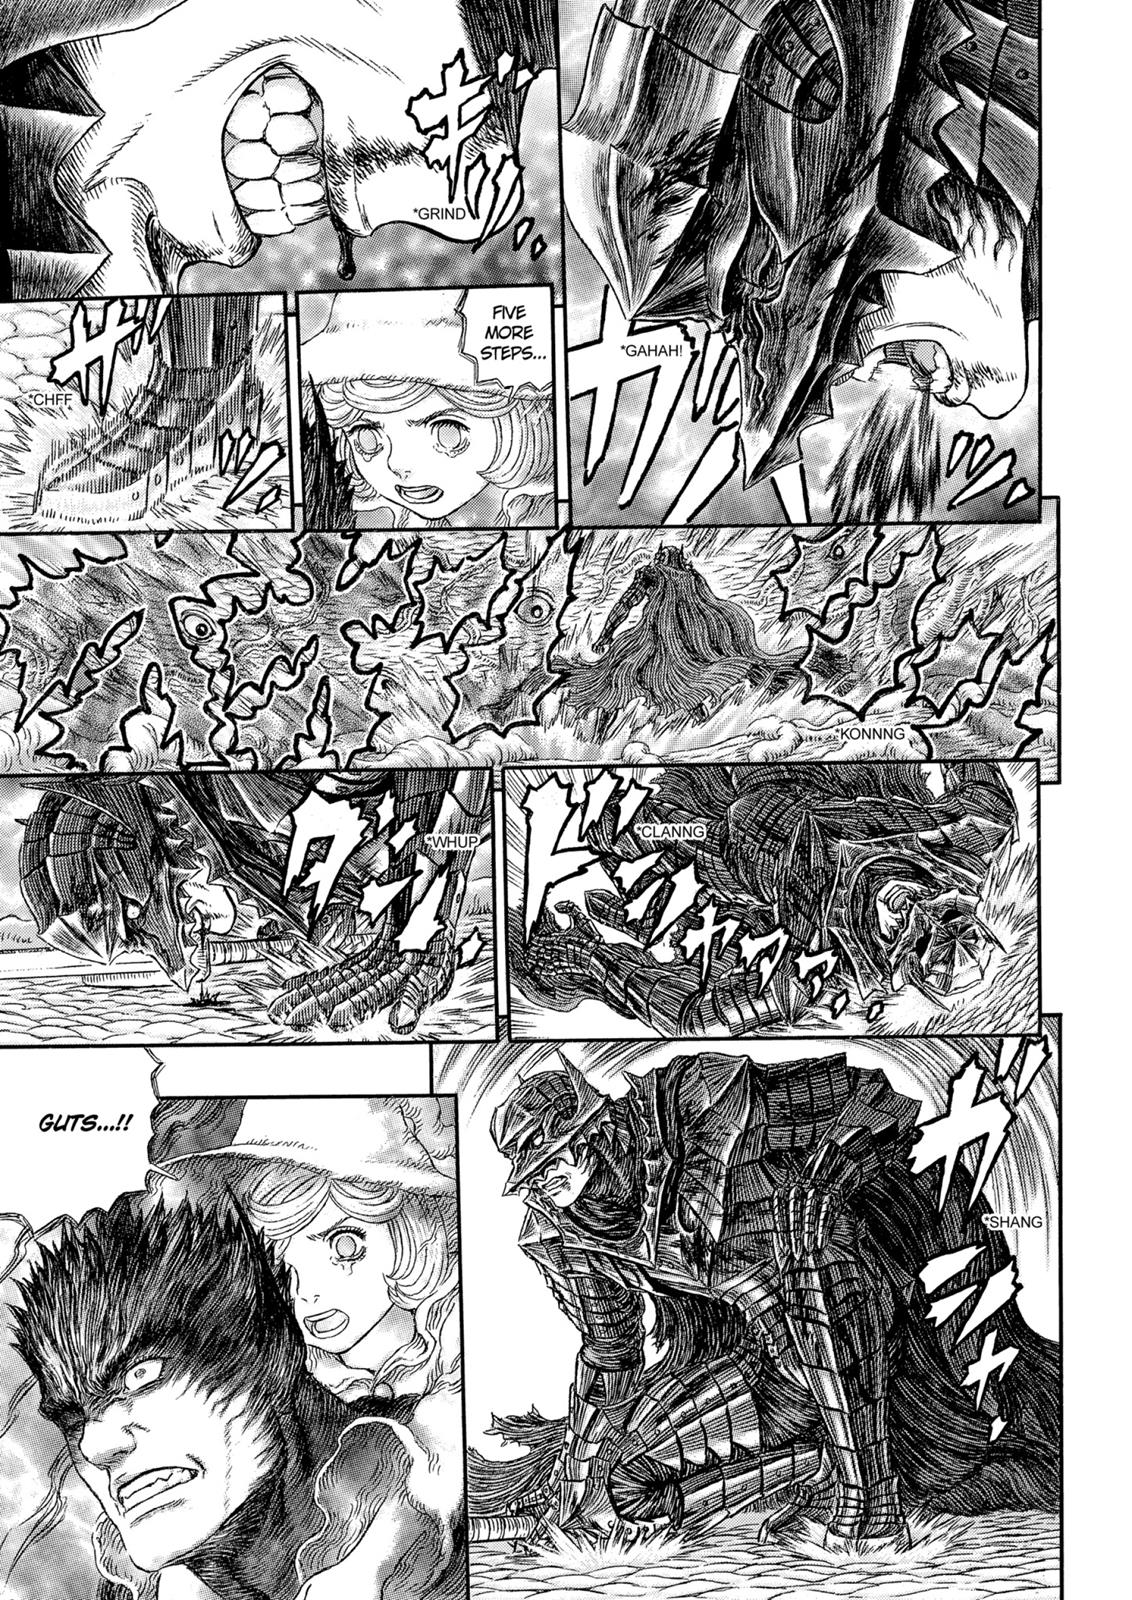 Berserk Manga Chapter 325 image 24